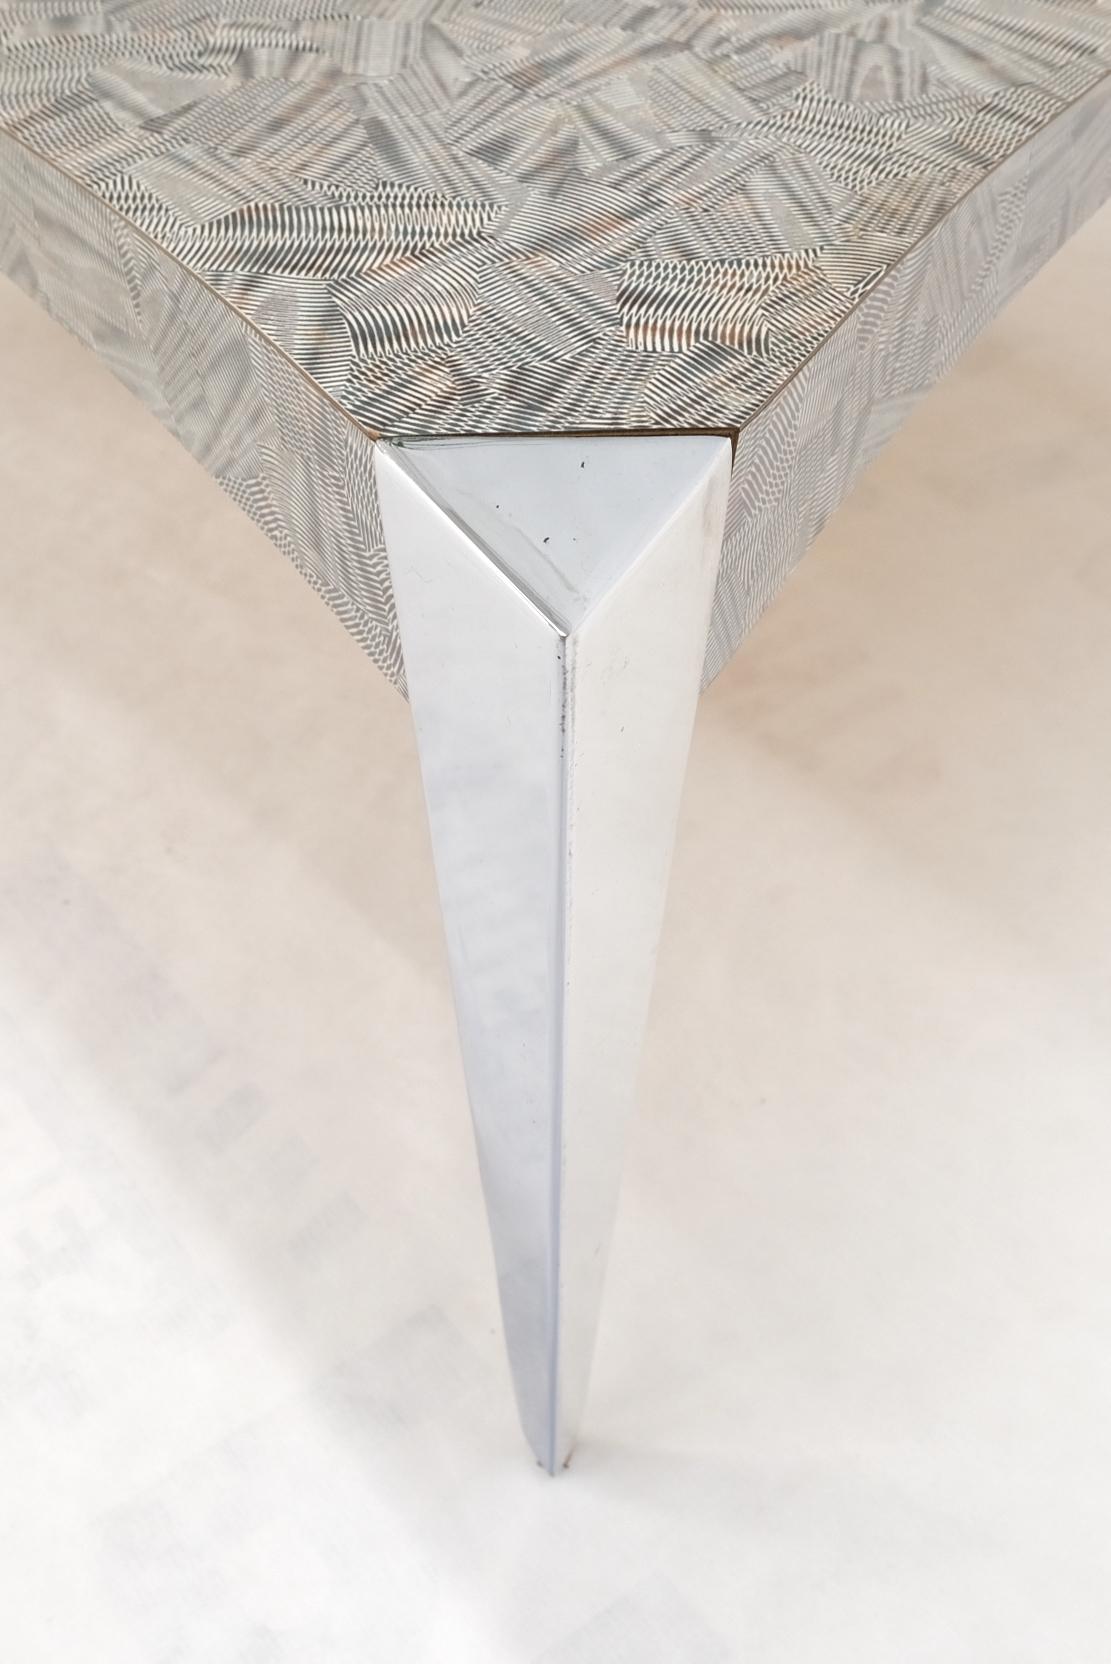 Aluminium Manteau de table carré à côtés concaves et concaves, pieds triangulaires effilés en aluminium, table basse Scratch Coat en vente